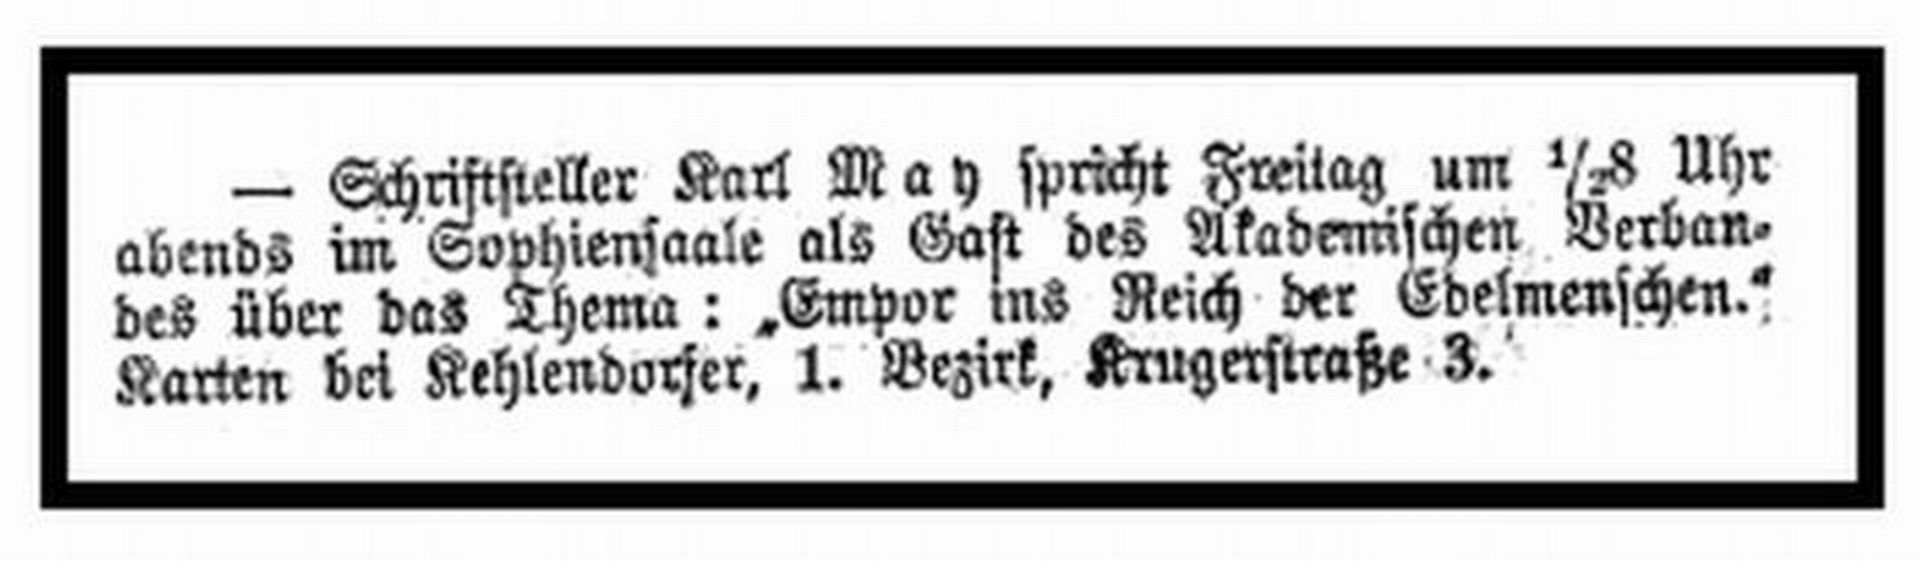 Ankuendigung Wiener Rede 1912.jpg